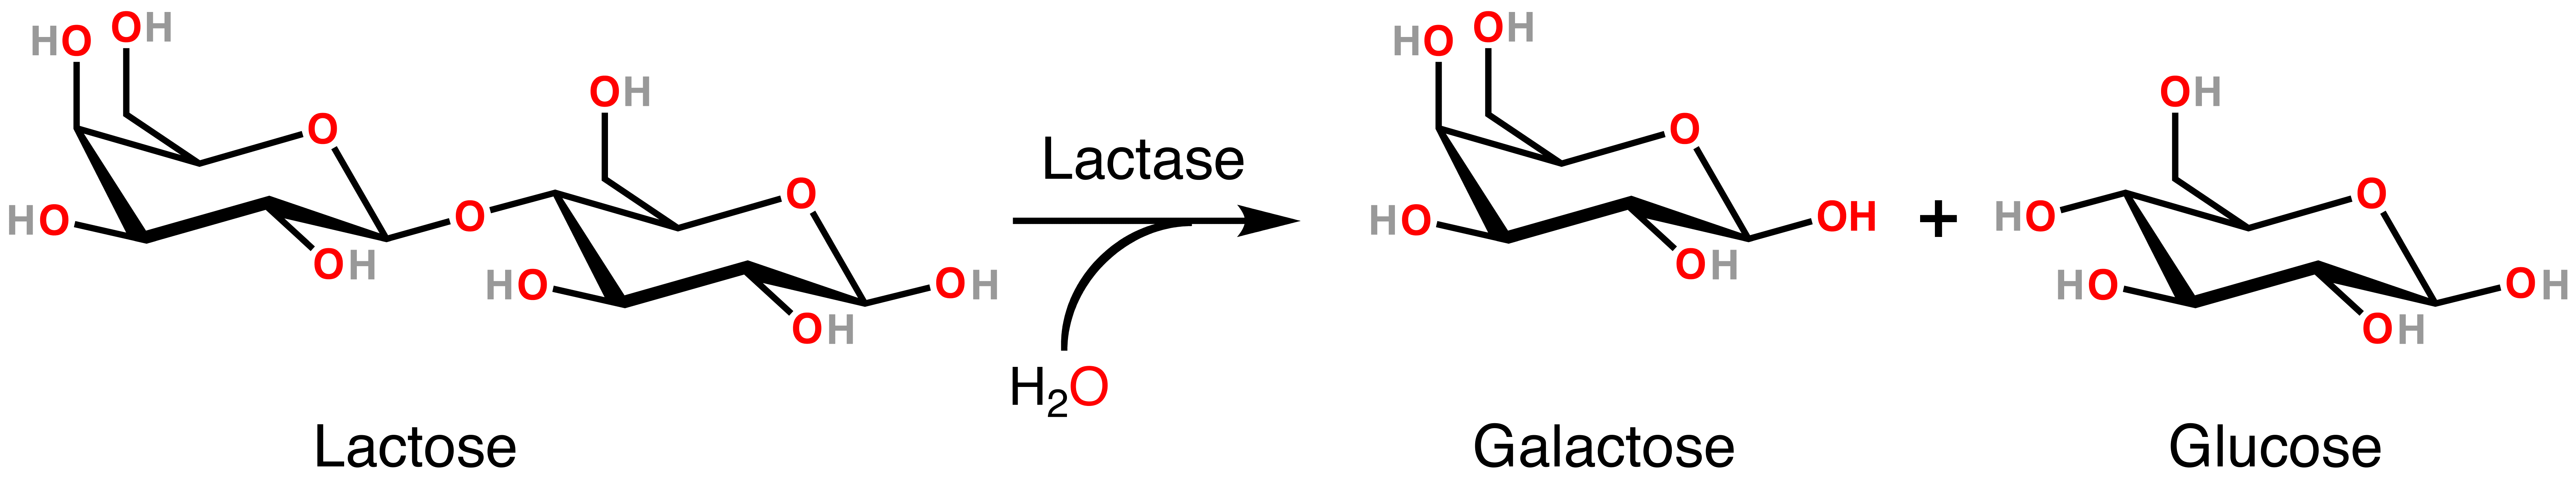 Lactose Lactase Reaction